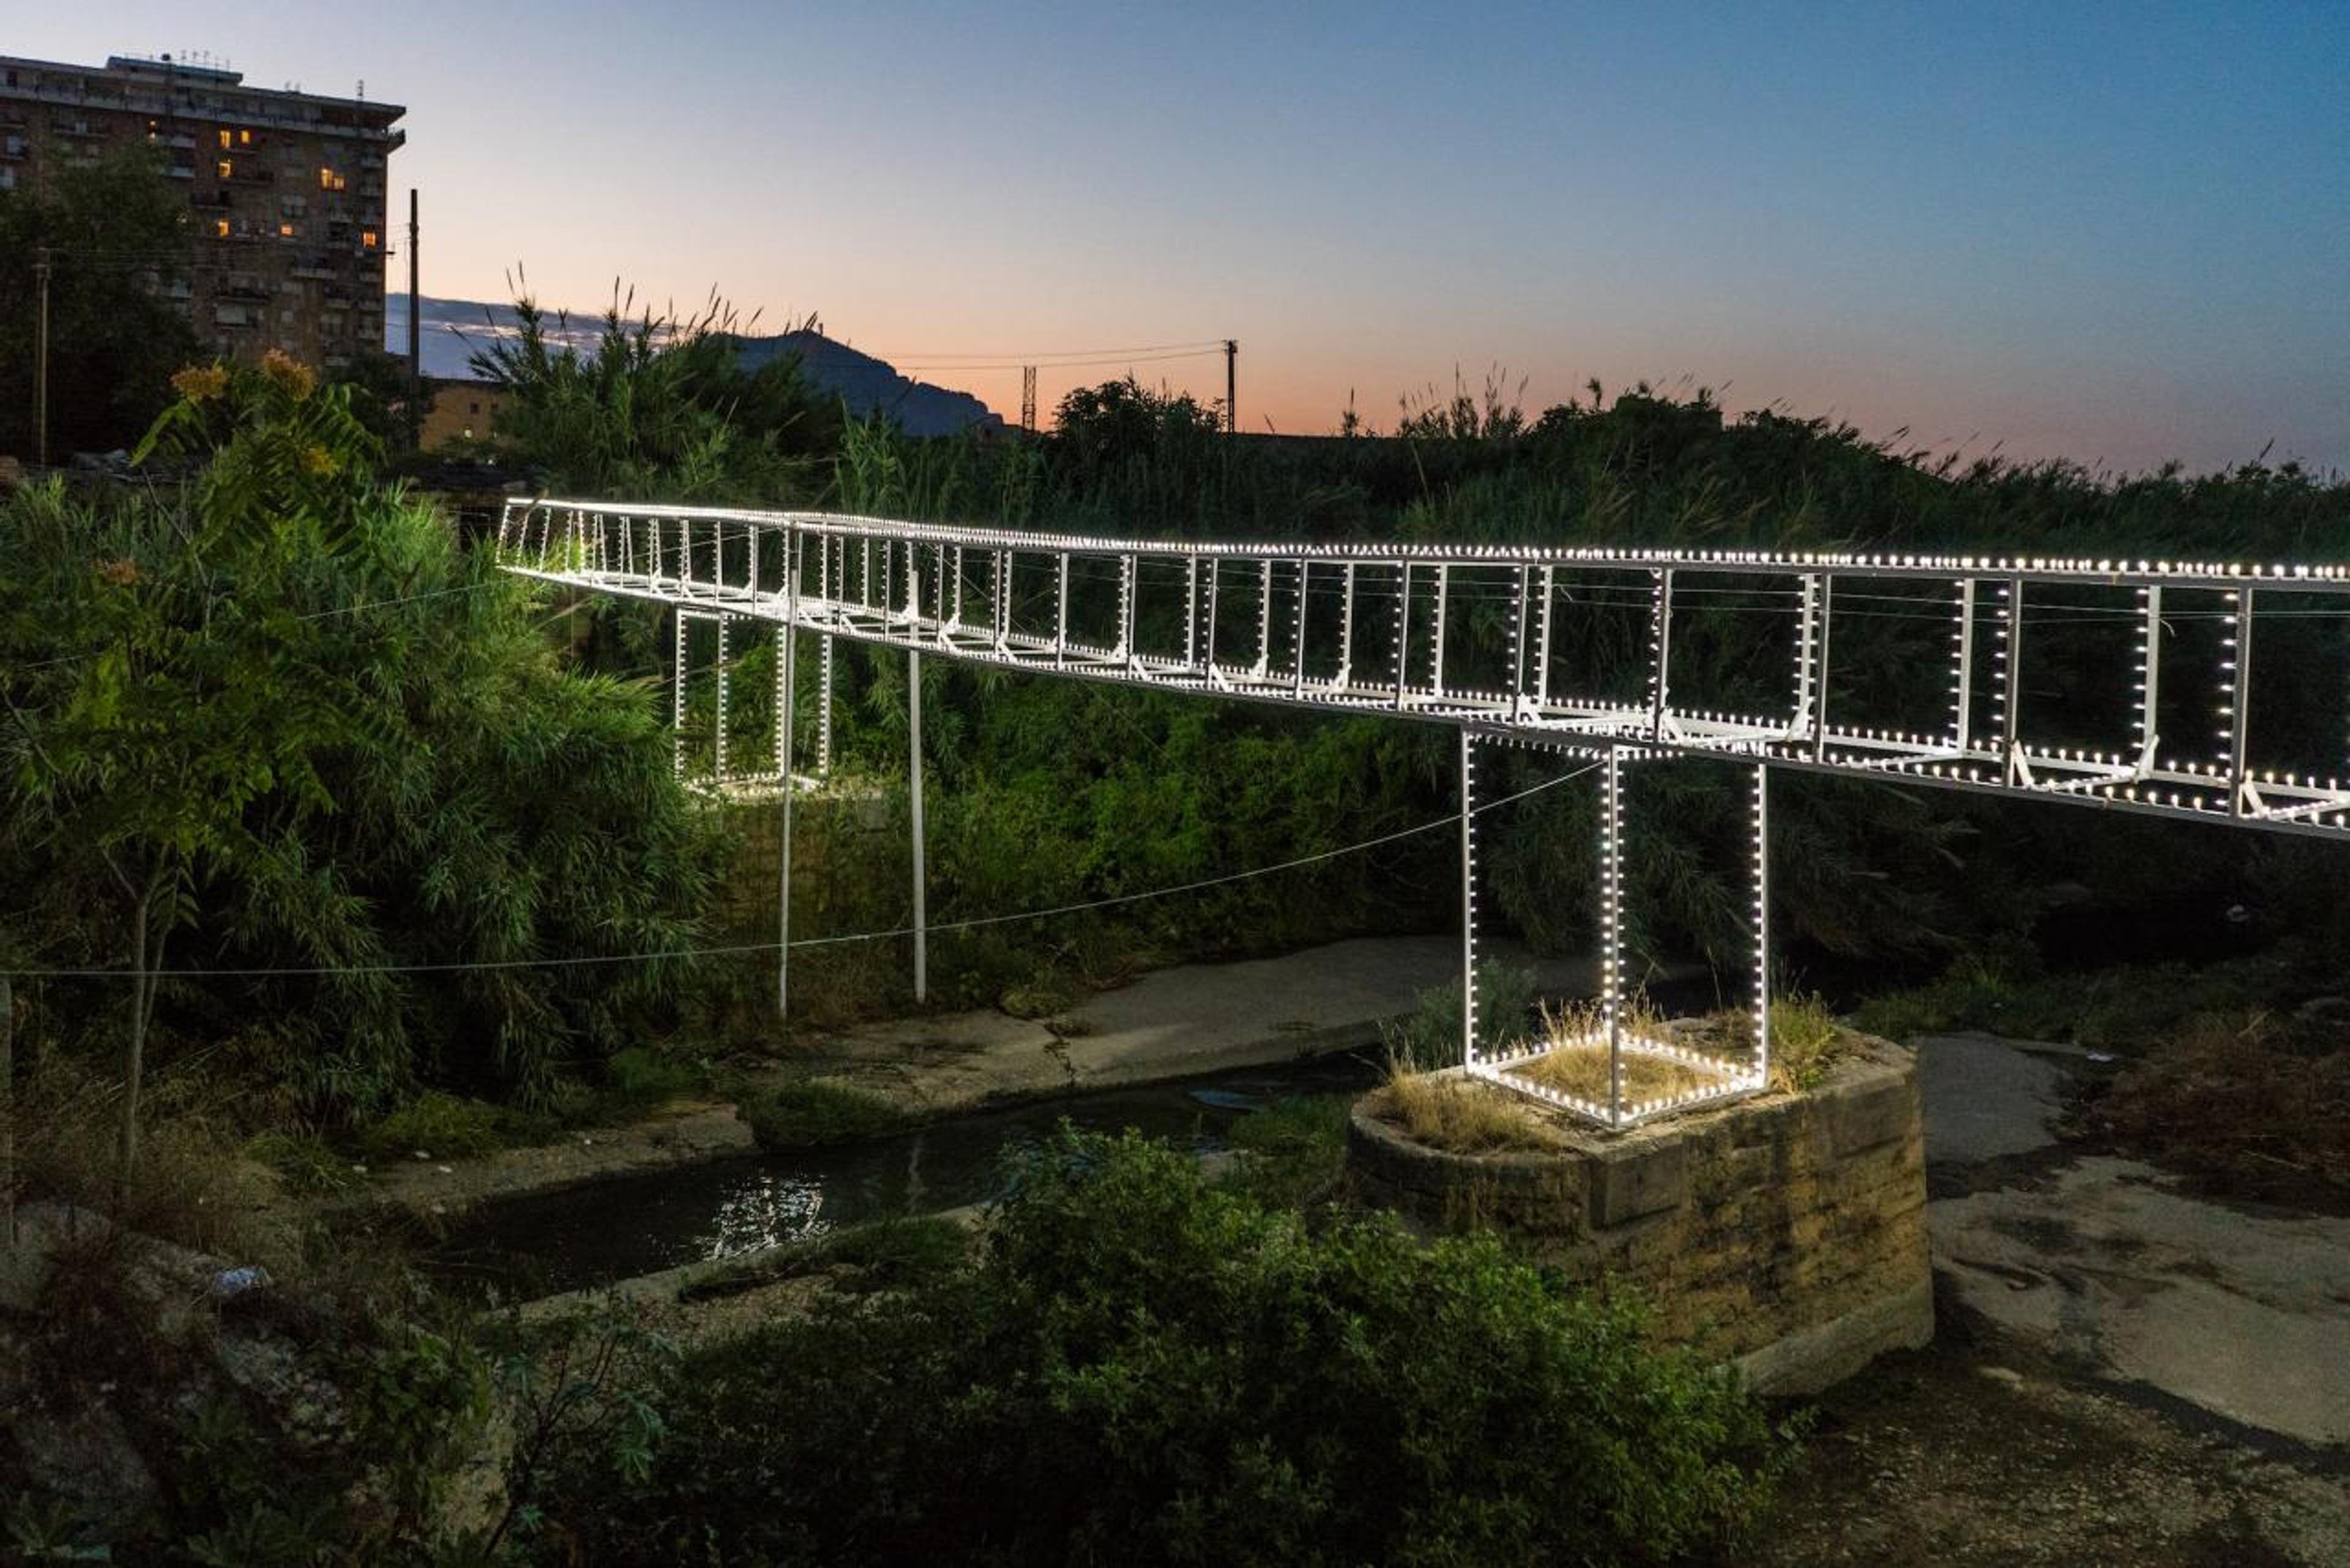 Roberto Collovà, Ponte Luminaria. Giardino di giardini. Azioni sulla Costa Sud, 2018, mixed media, installation view, Oreto River, Palermo